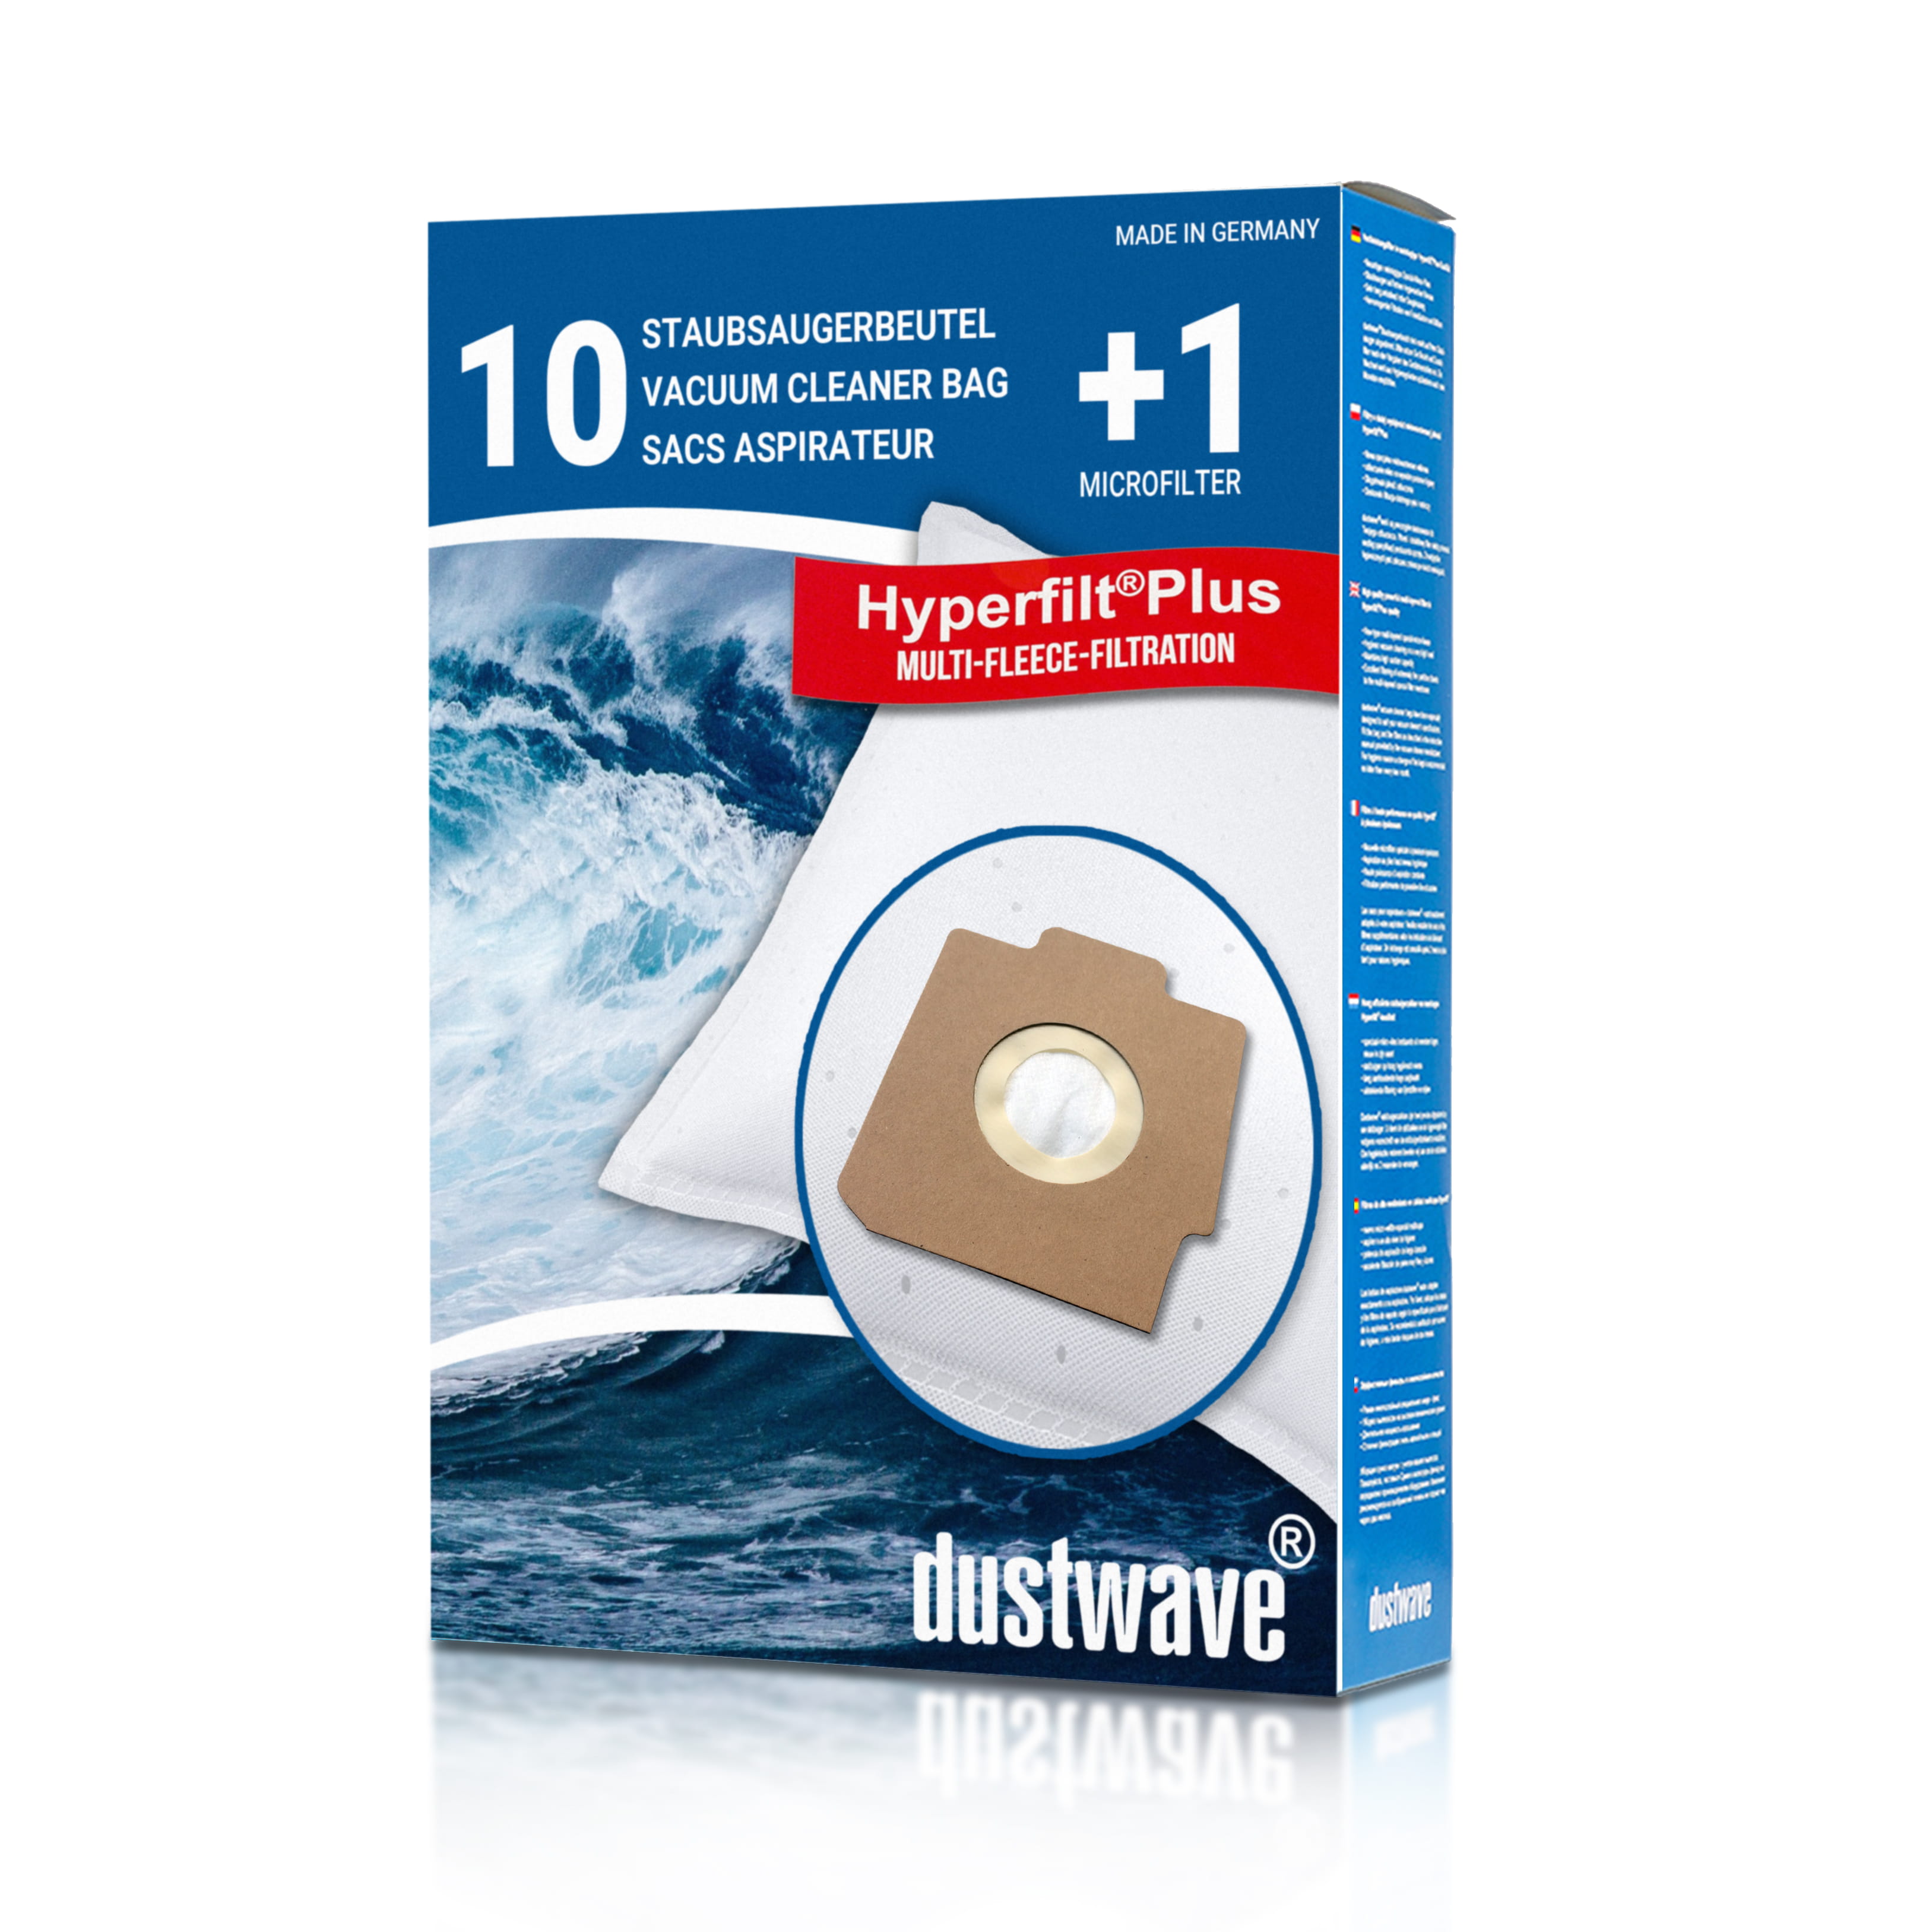 Dustwave® 10 Staubsaugerbeutel für Hoover Compact Elite 11 Tropic - hocheffizient, mehrlagiges Mikrovlies mit Hygieneverschluss - Made in Germany